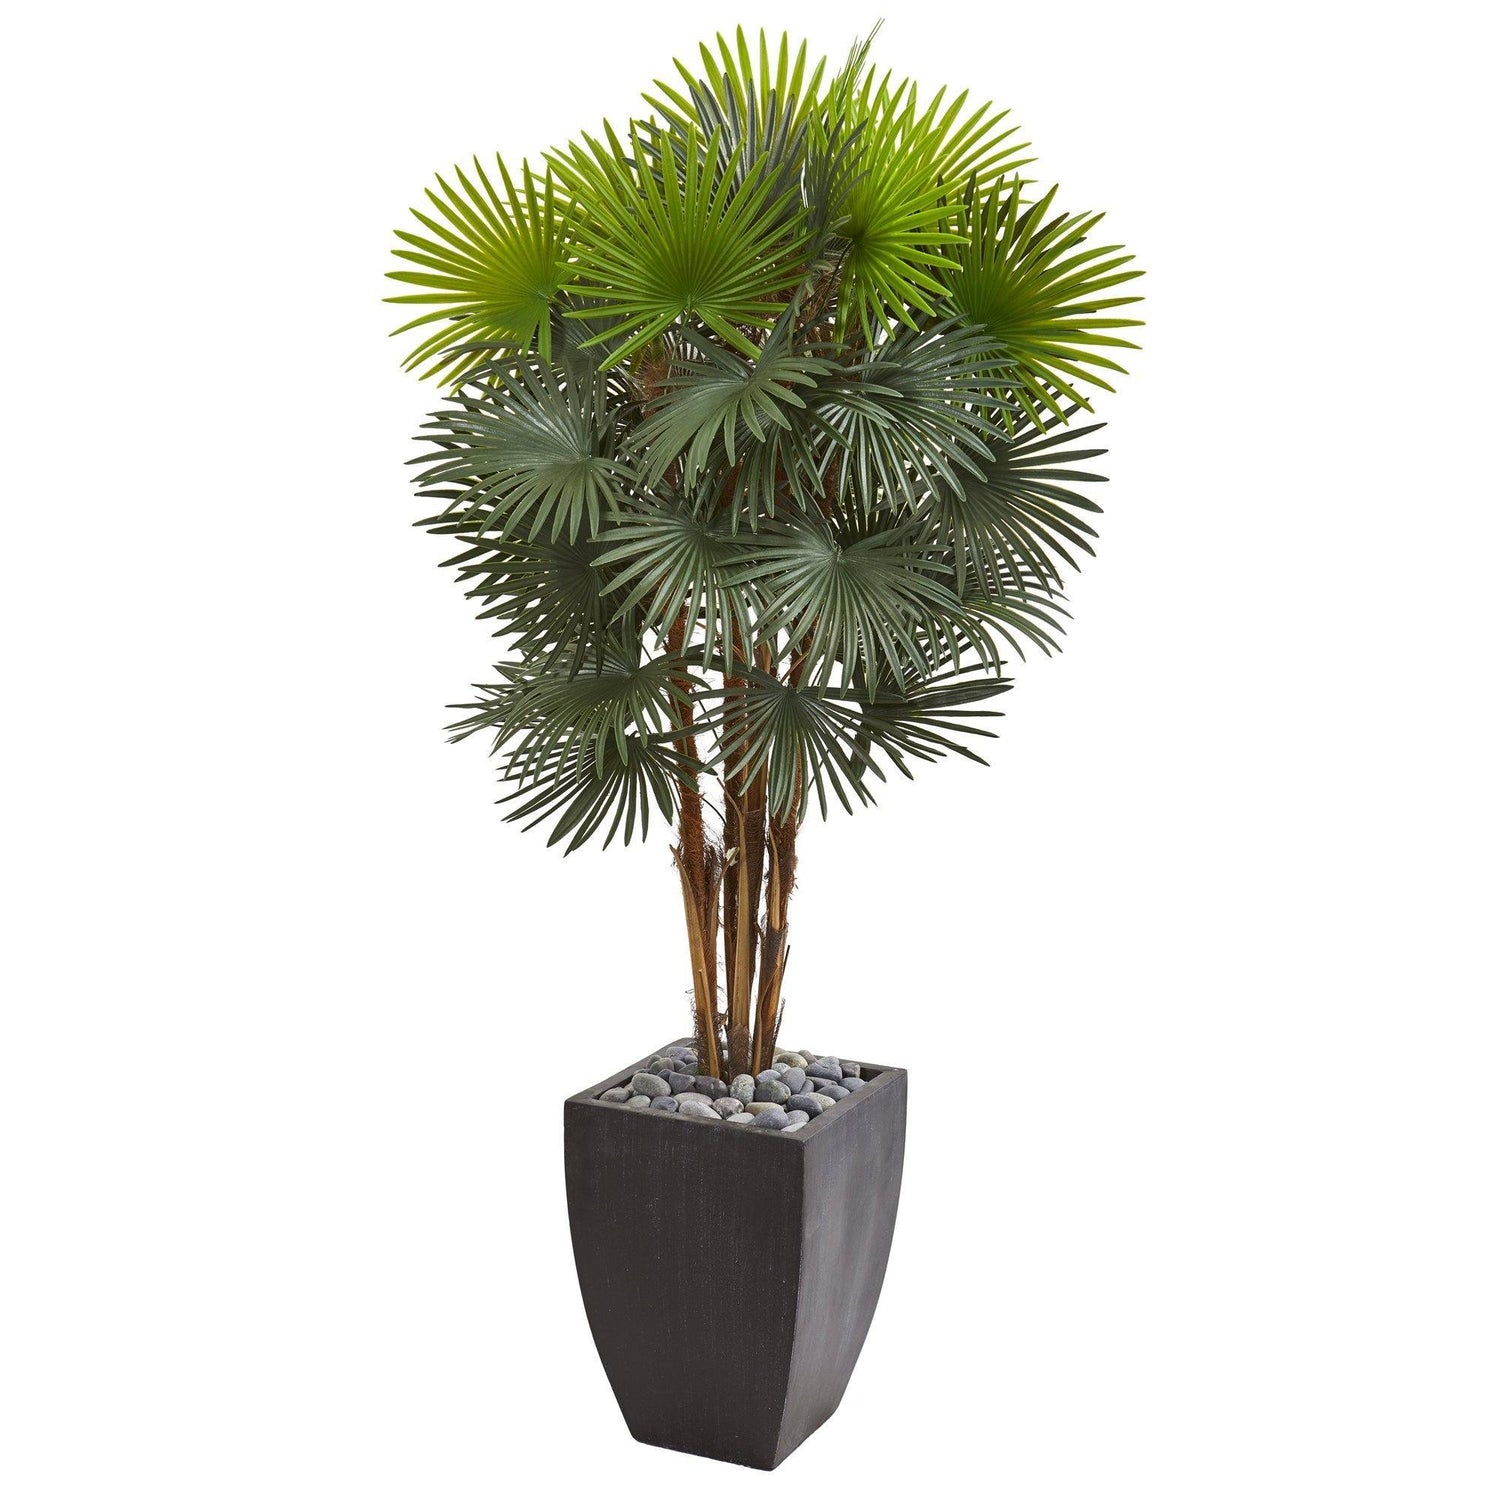 59” Fan Palm Artificial Tree in Black Planter